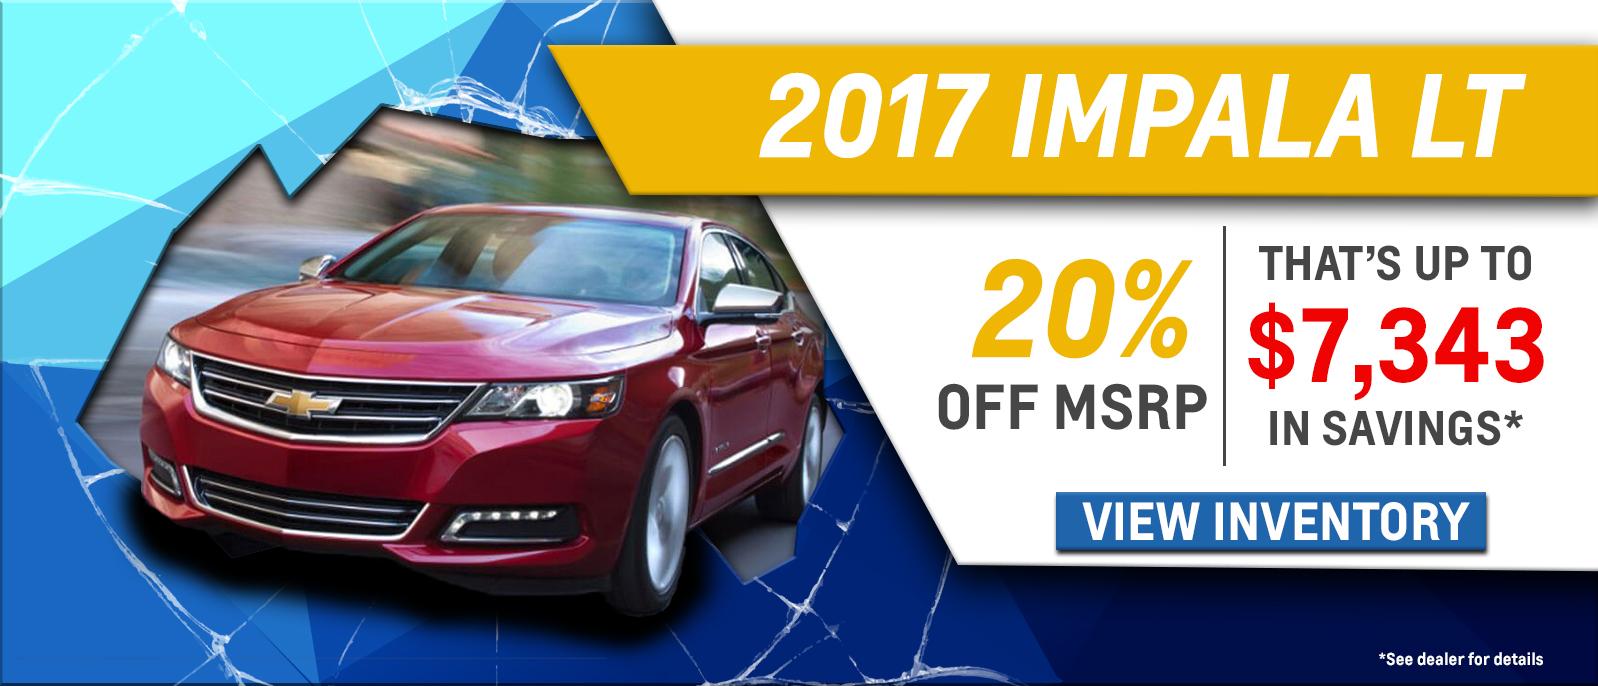 20% Off Impala LT!